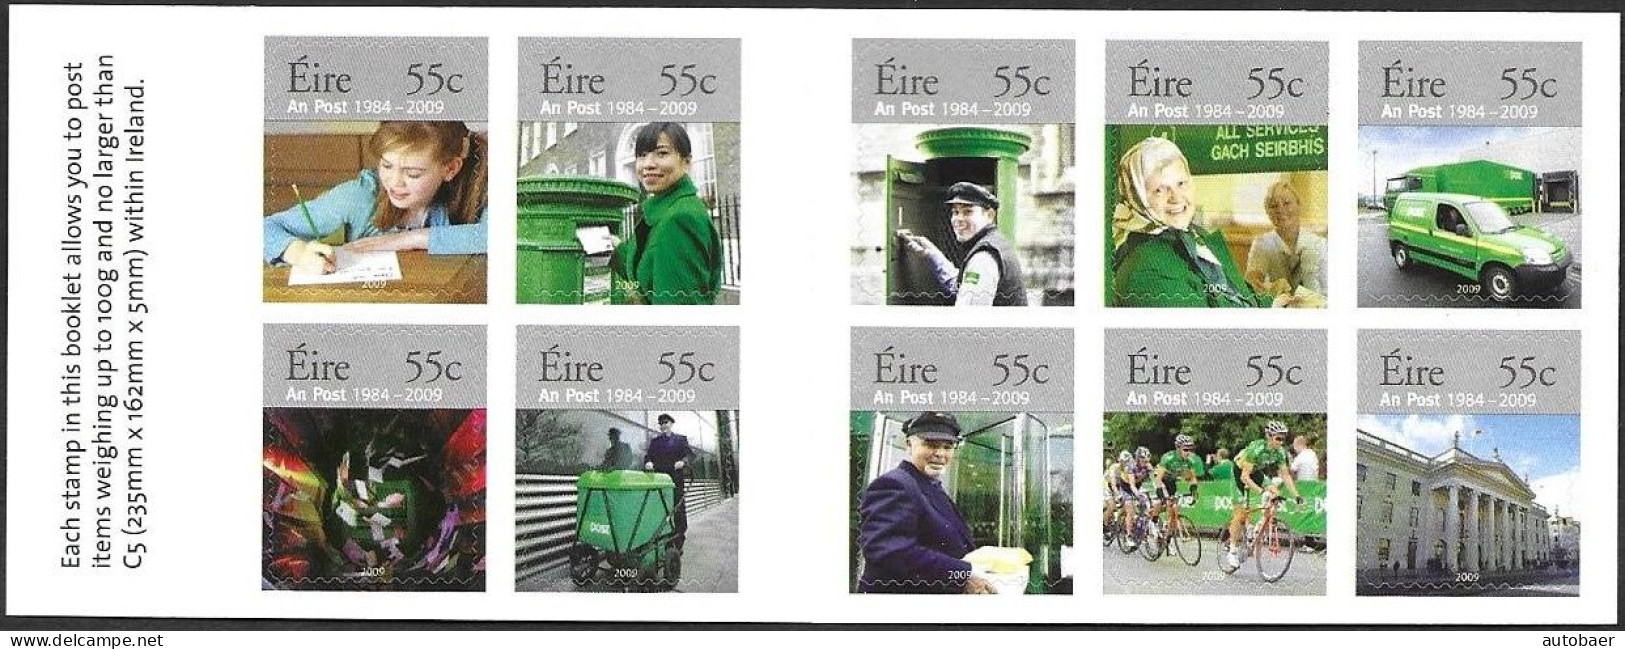 Irland Eire Ireland 2009 25 Years AN-Post Michel No 1866-75 Markenheftchen Carnet Booklet MNH Postfrisch Neuf ** - Carnets